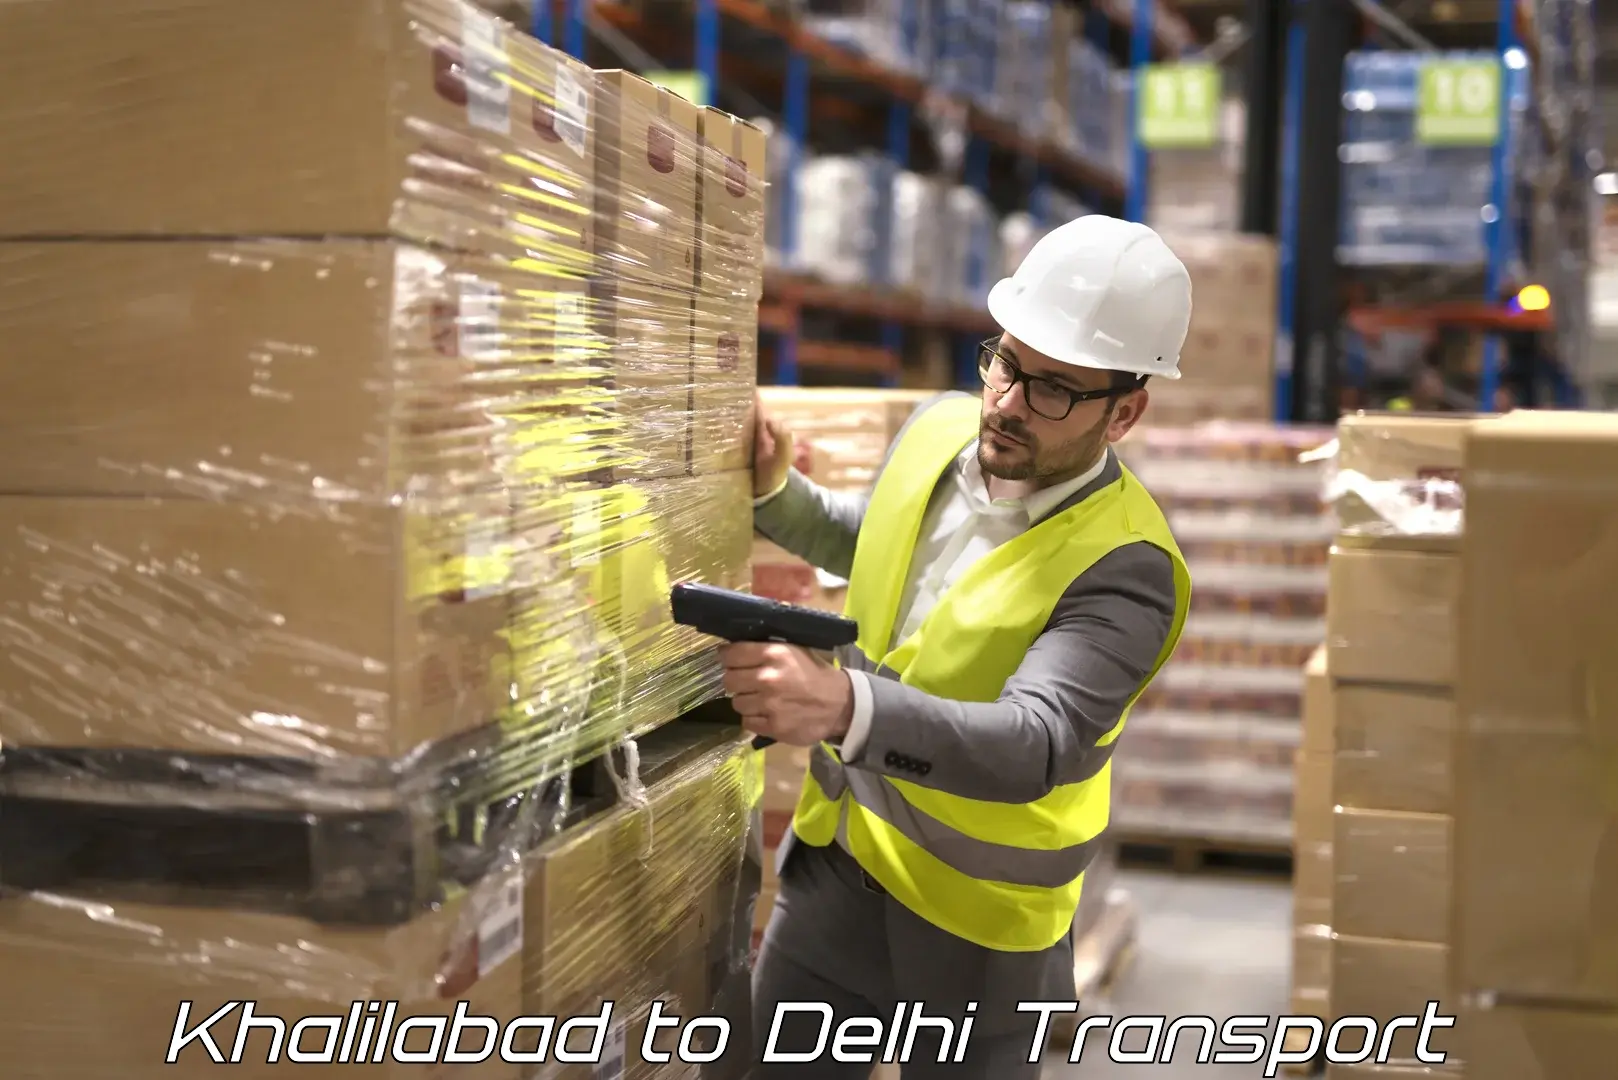 Commercial transport service Khalilabad to Delhi Technological University DTU